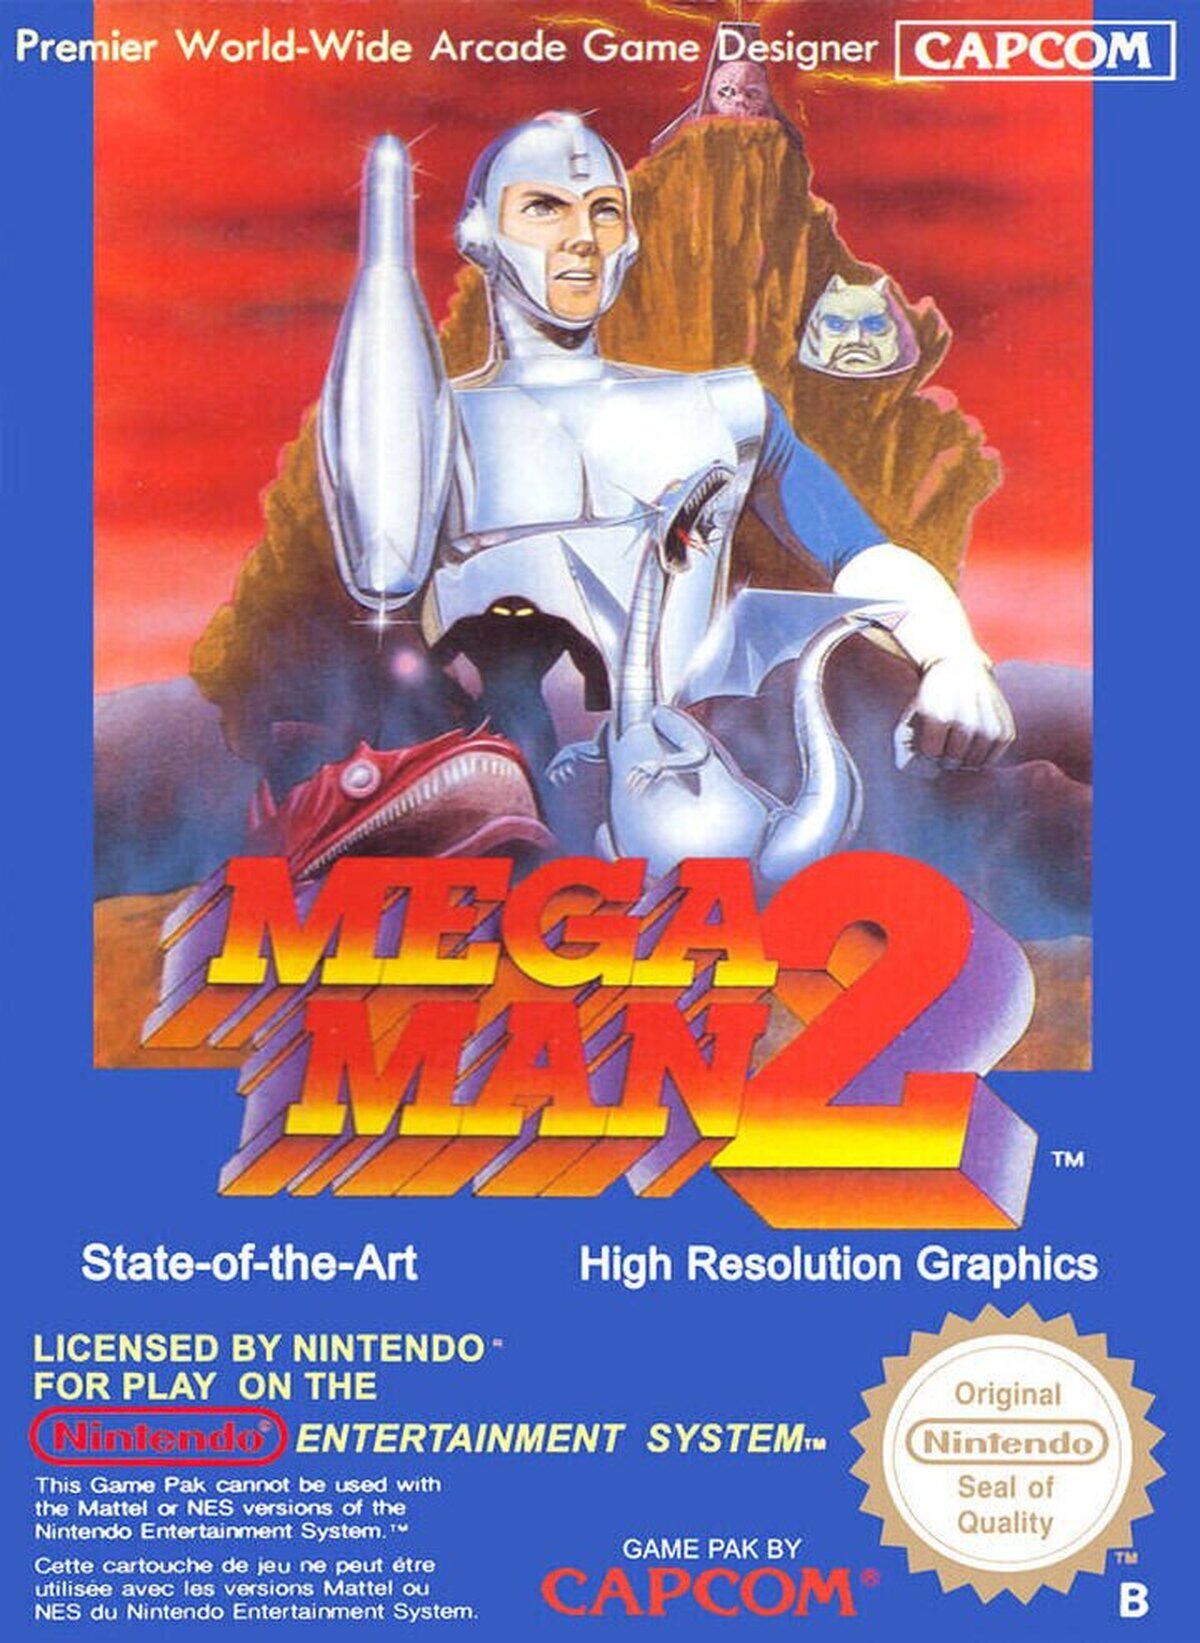 Opinión sincera: ¿Os gusta la portada Europea de Mega Man 2 (1988)? Por @_AkiraValentine